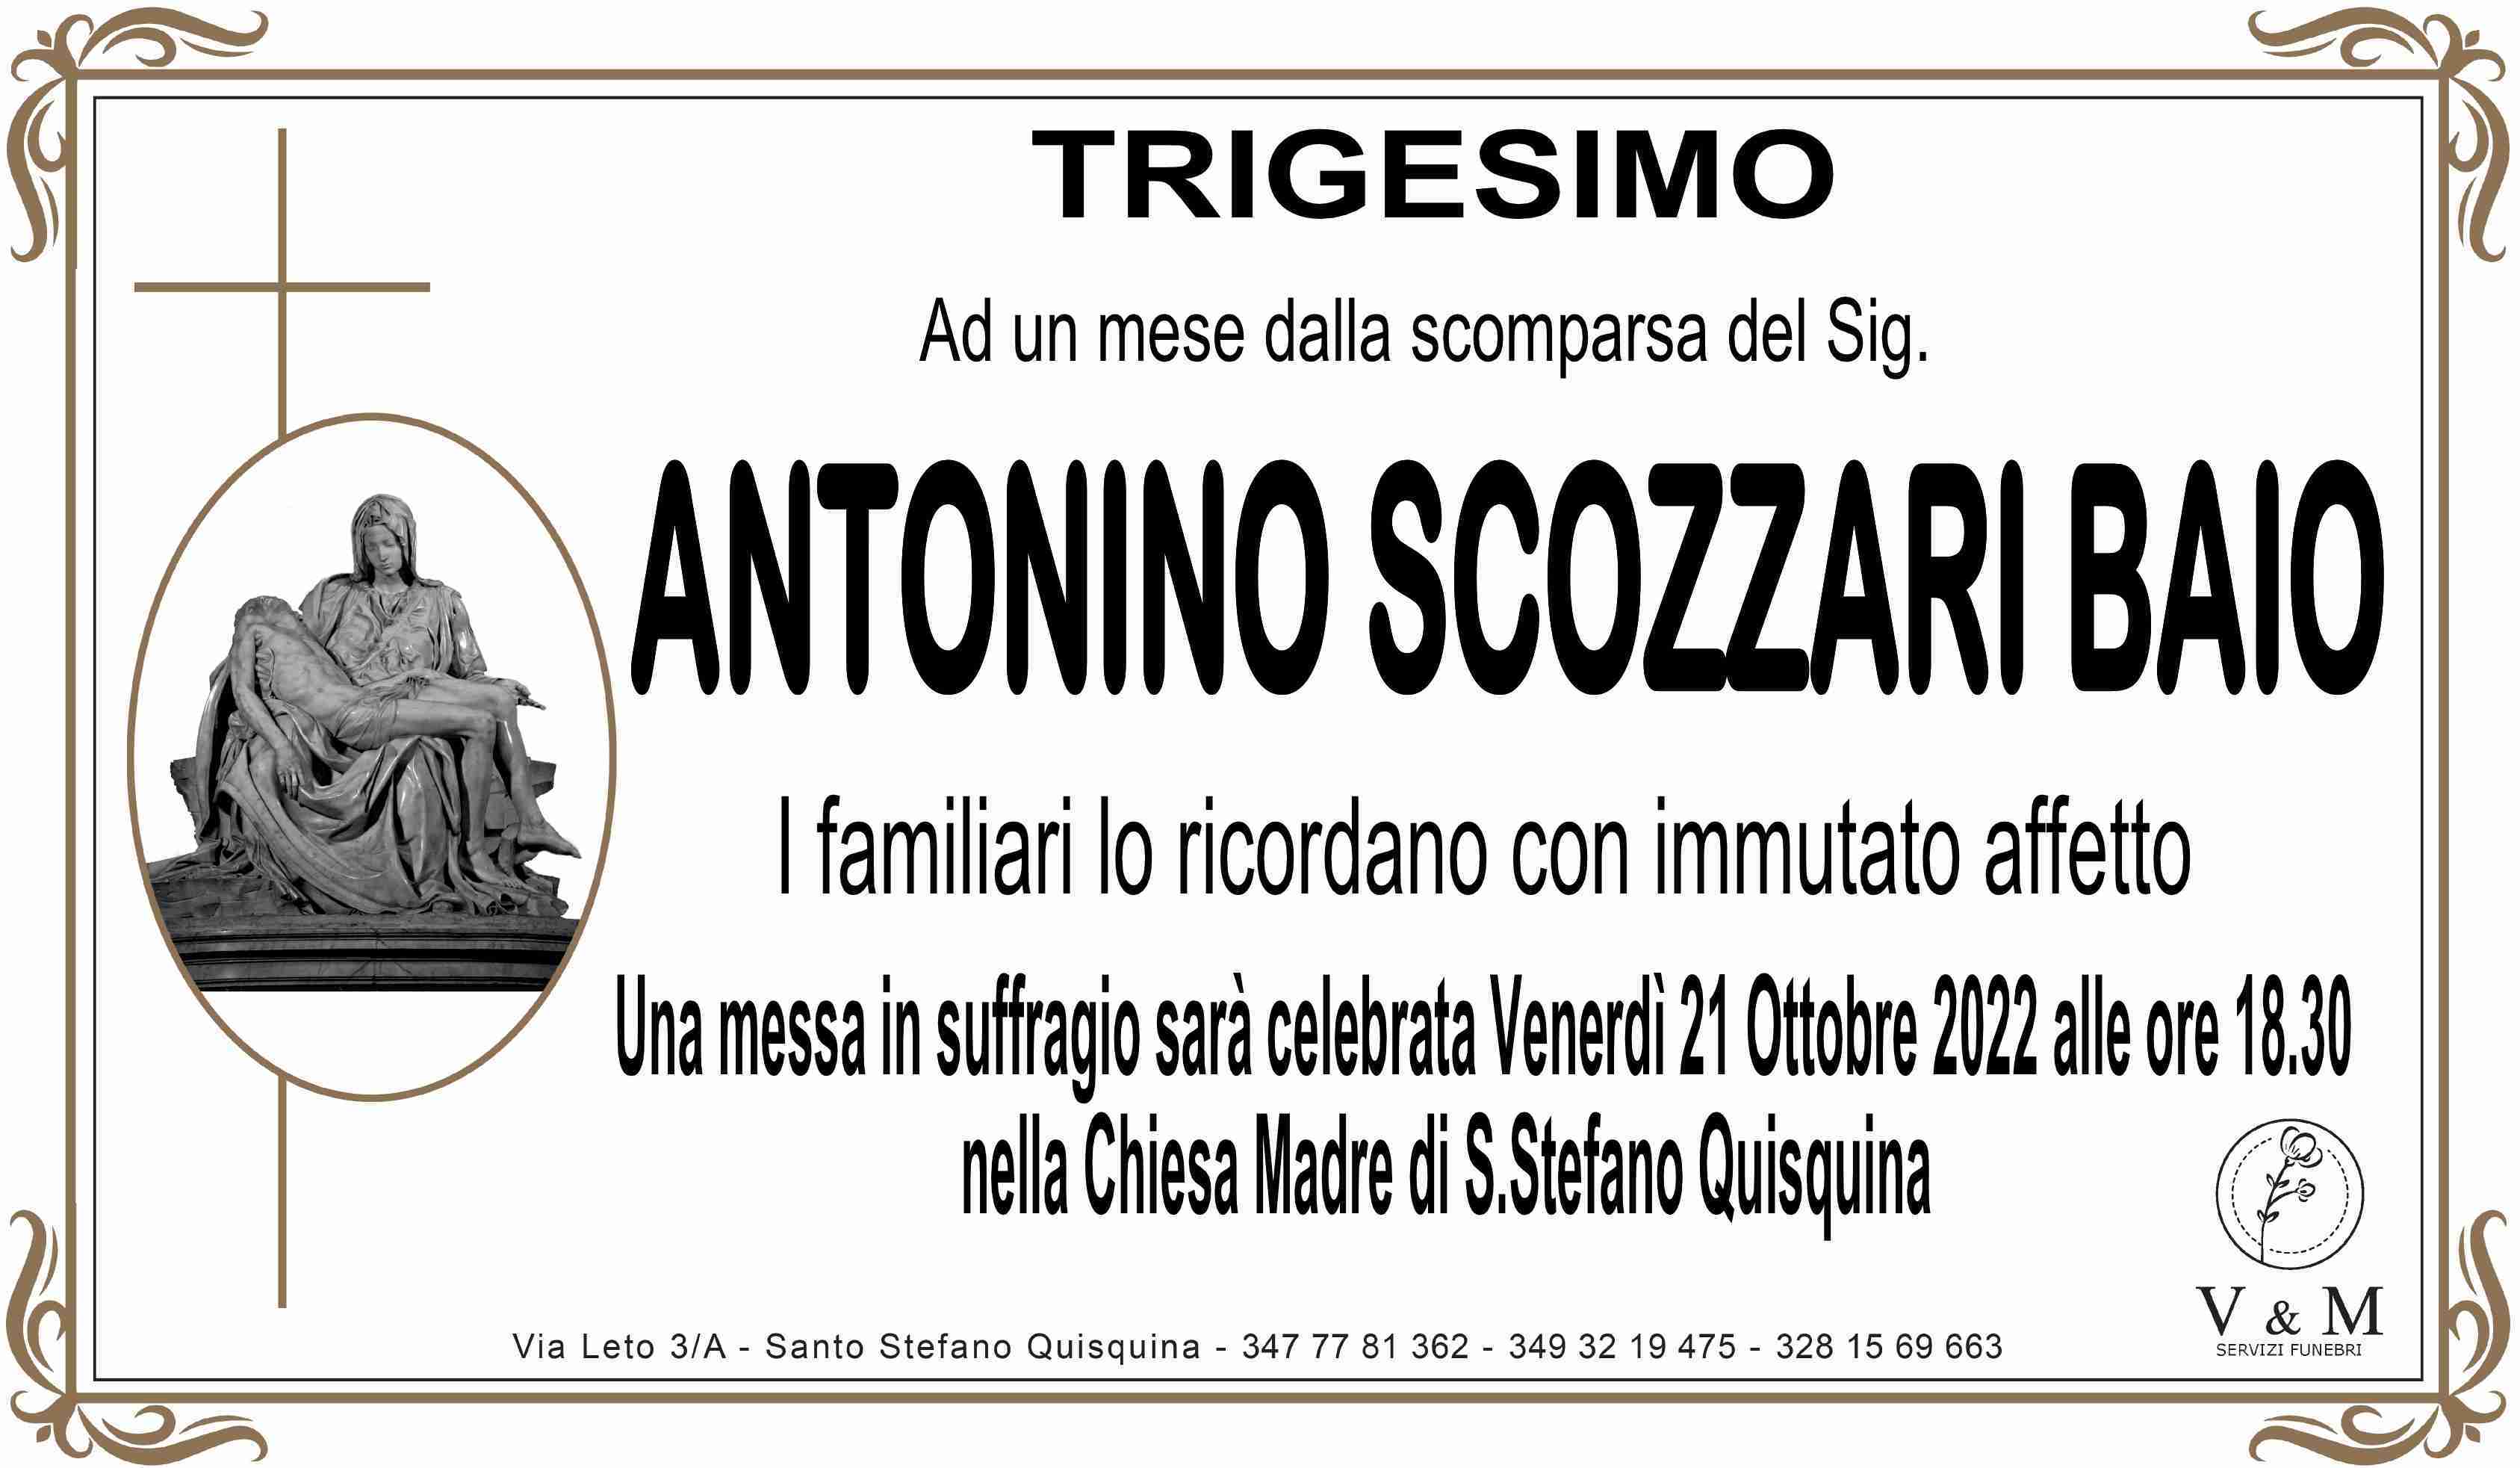 Antonino Scozzari Baio